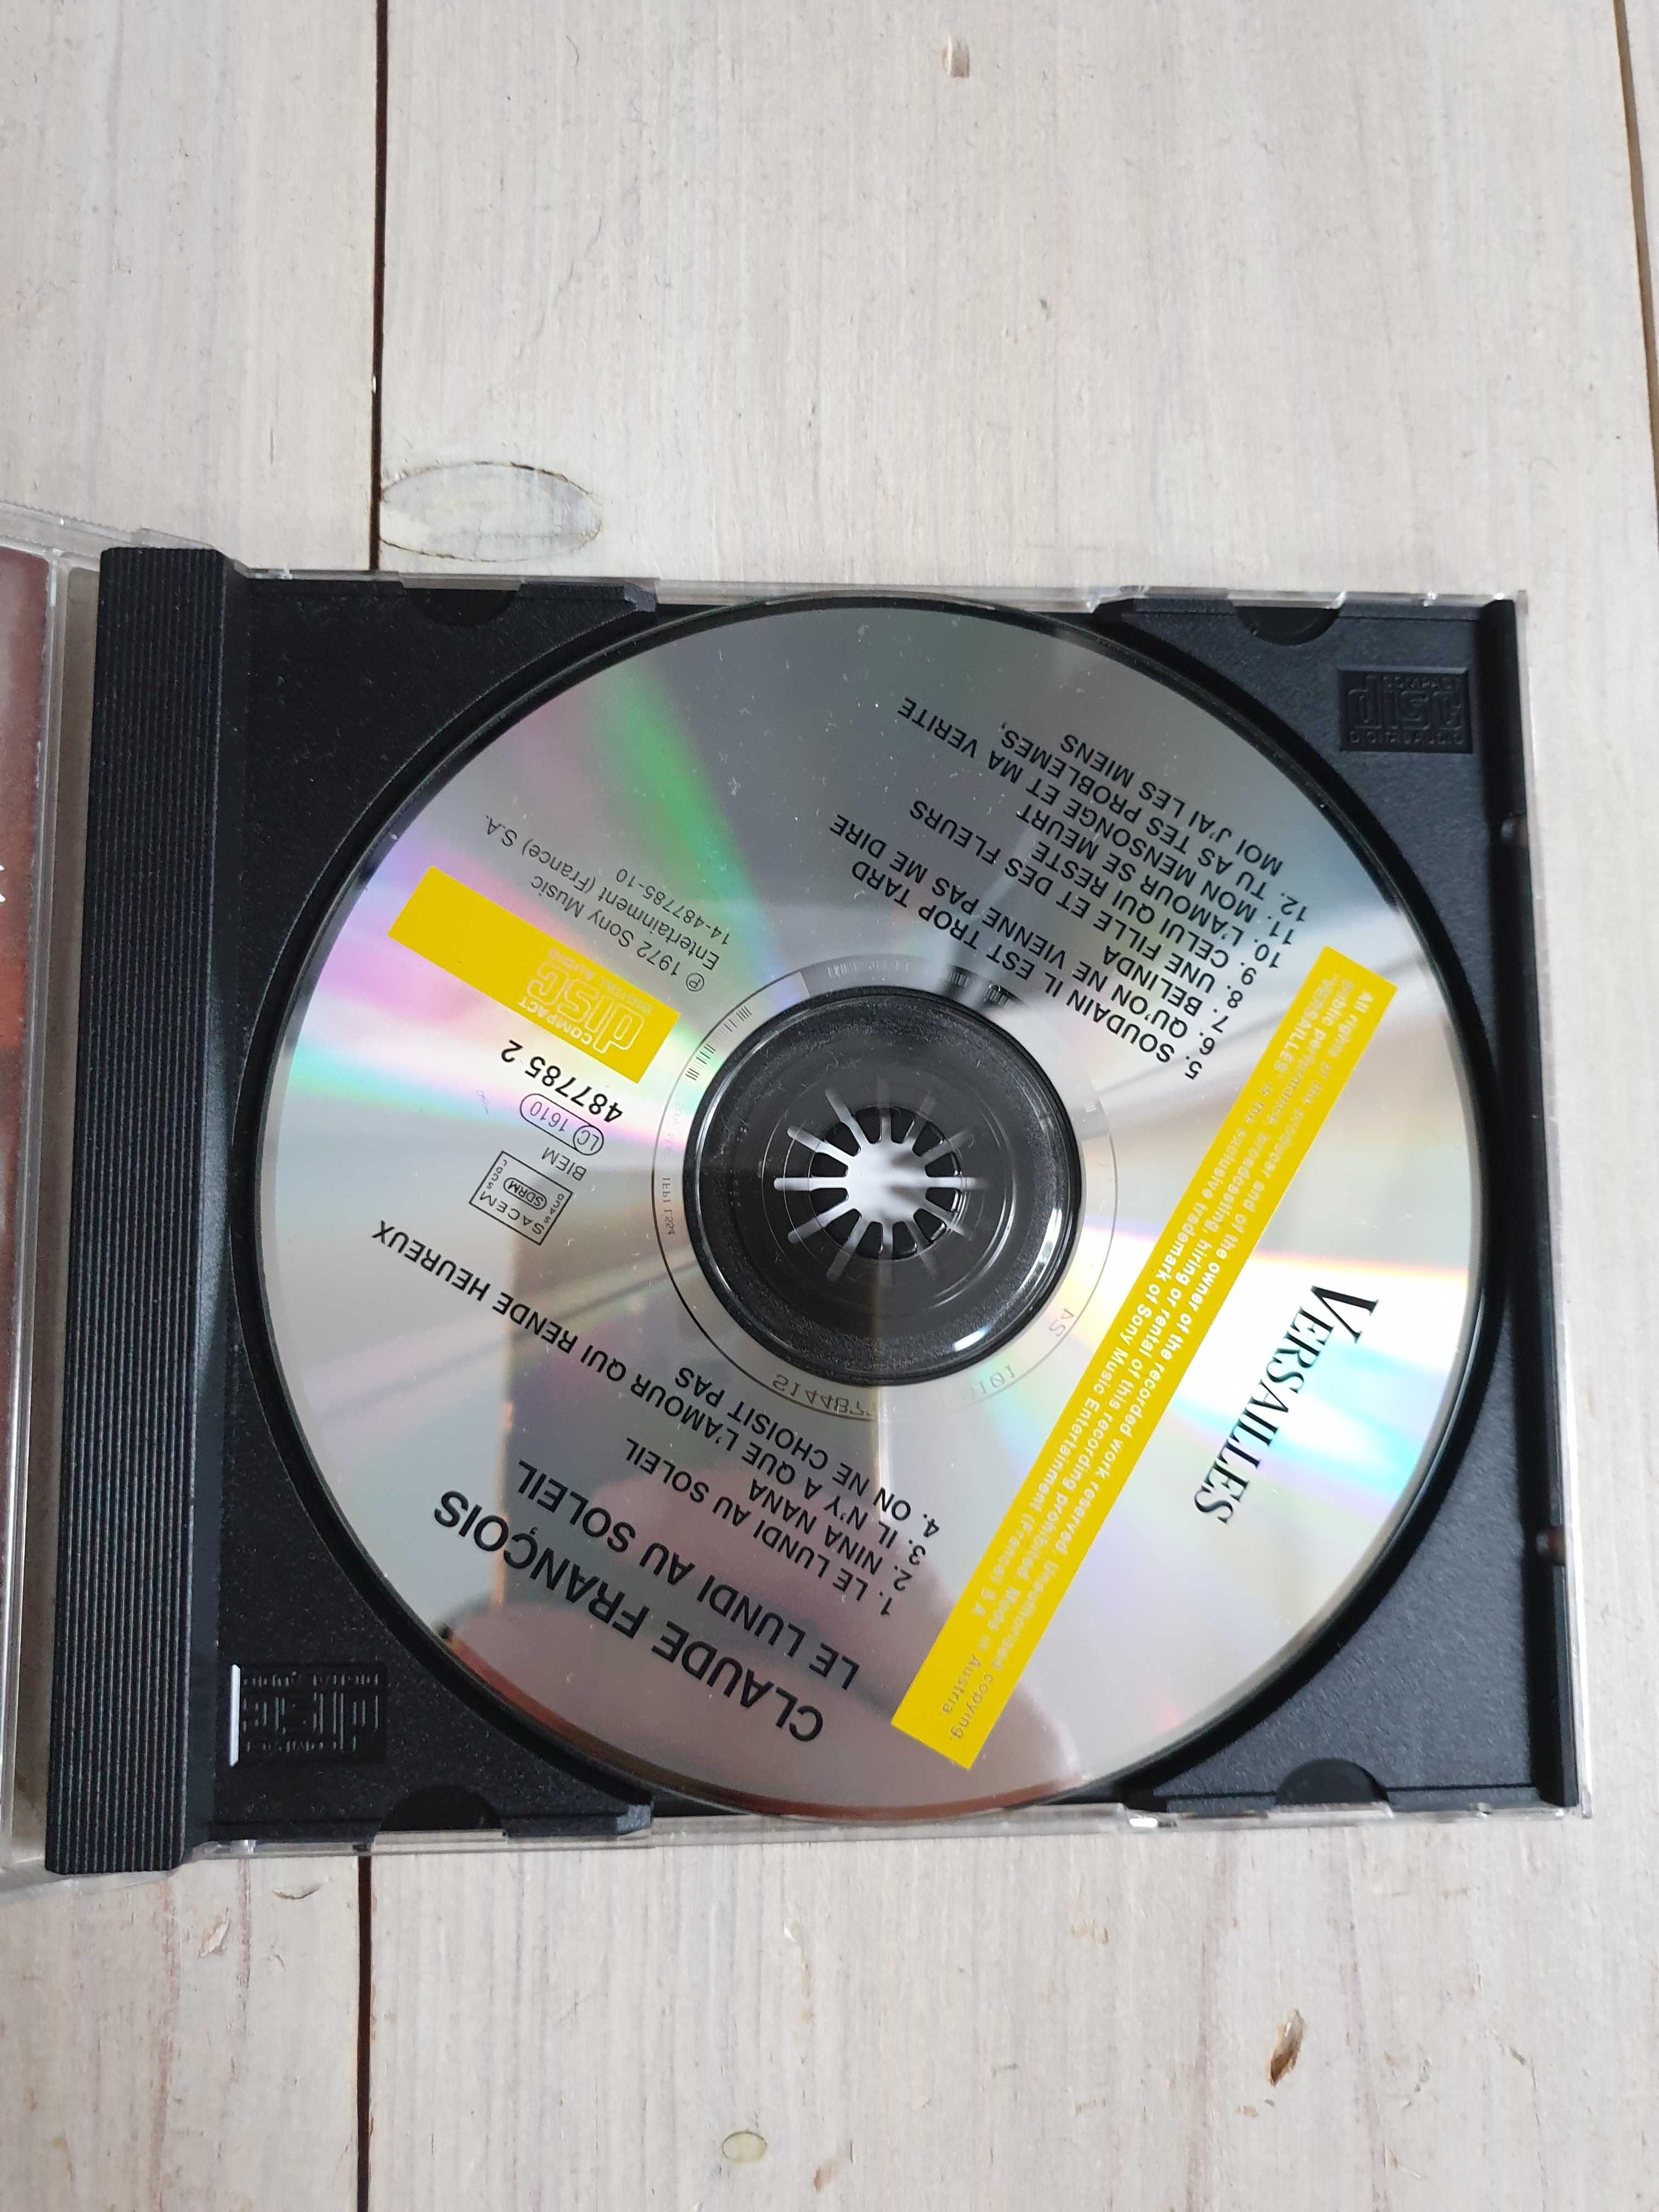 Płyta CD Claude Francois piosenka muzyka francuska